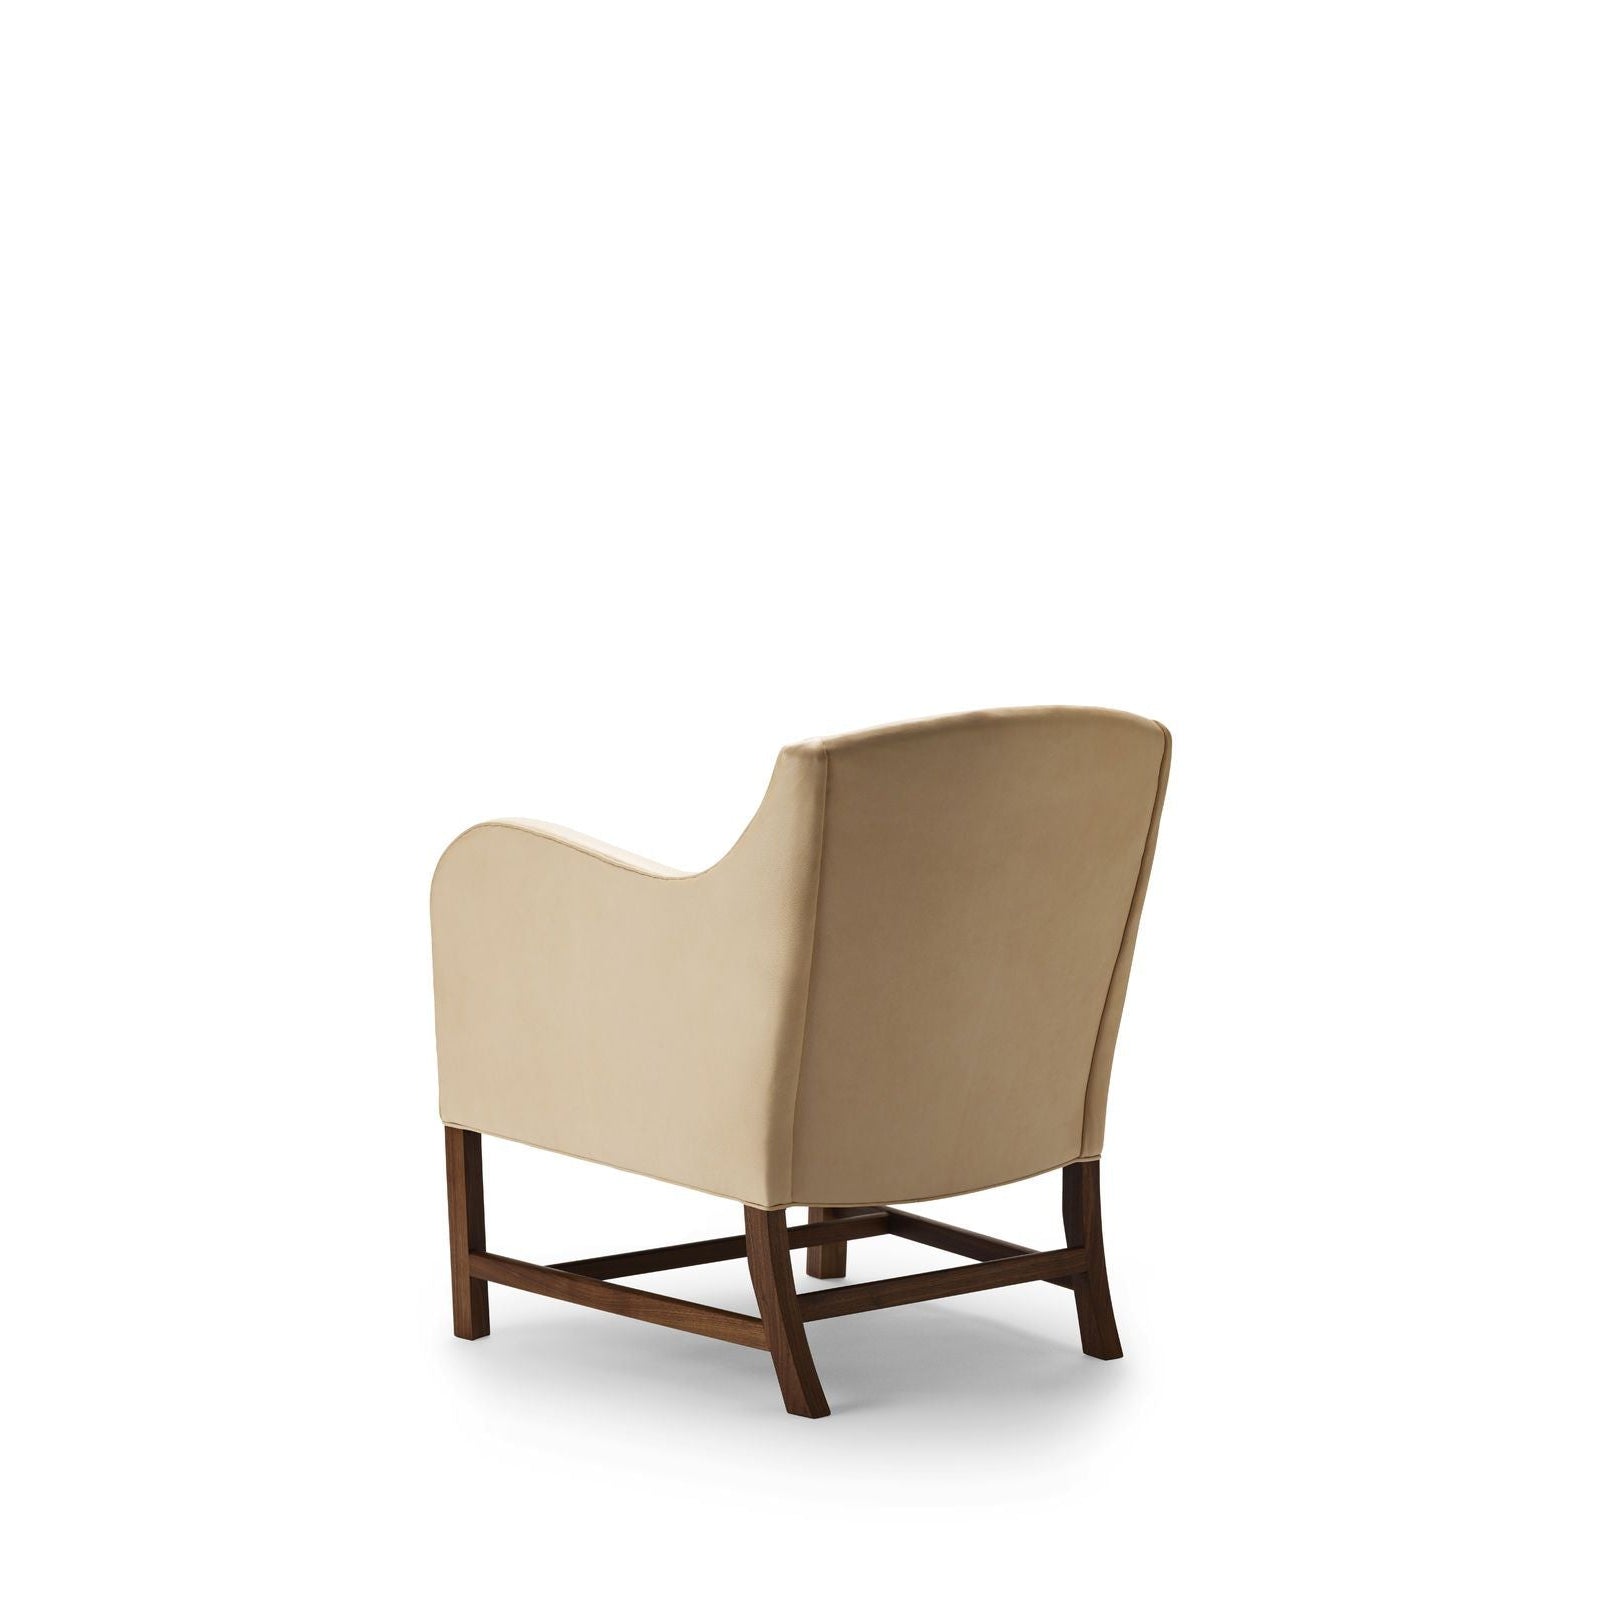 Carl Hansen KK43960 Mélange chaise en cuir de nature en noix / chèvre huilée